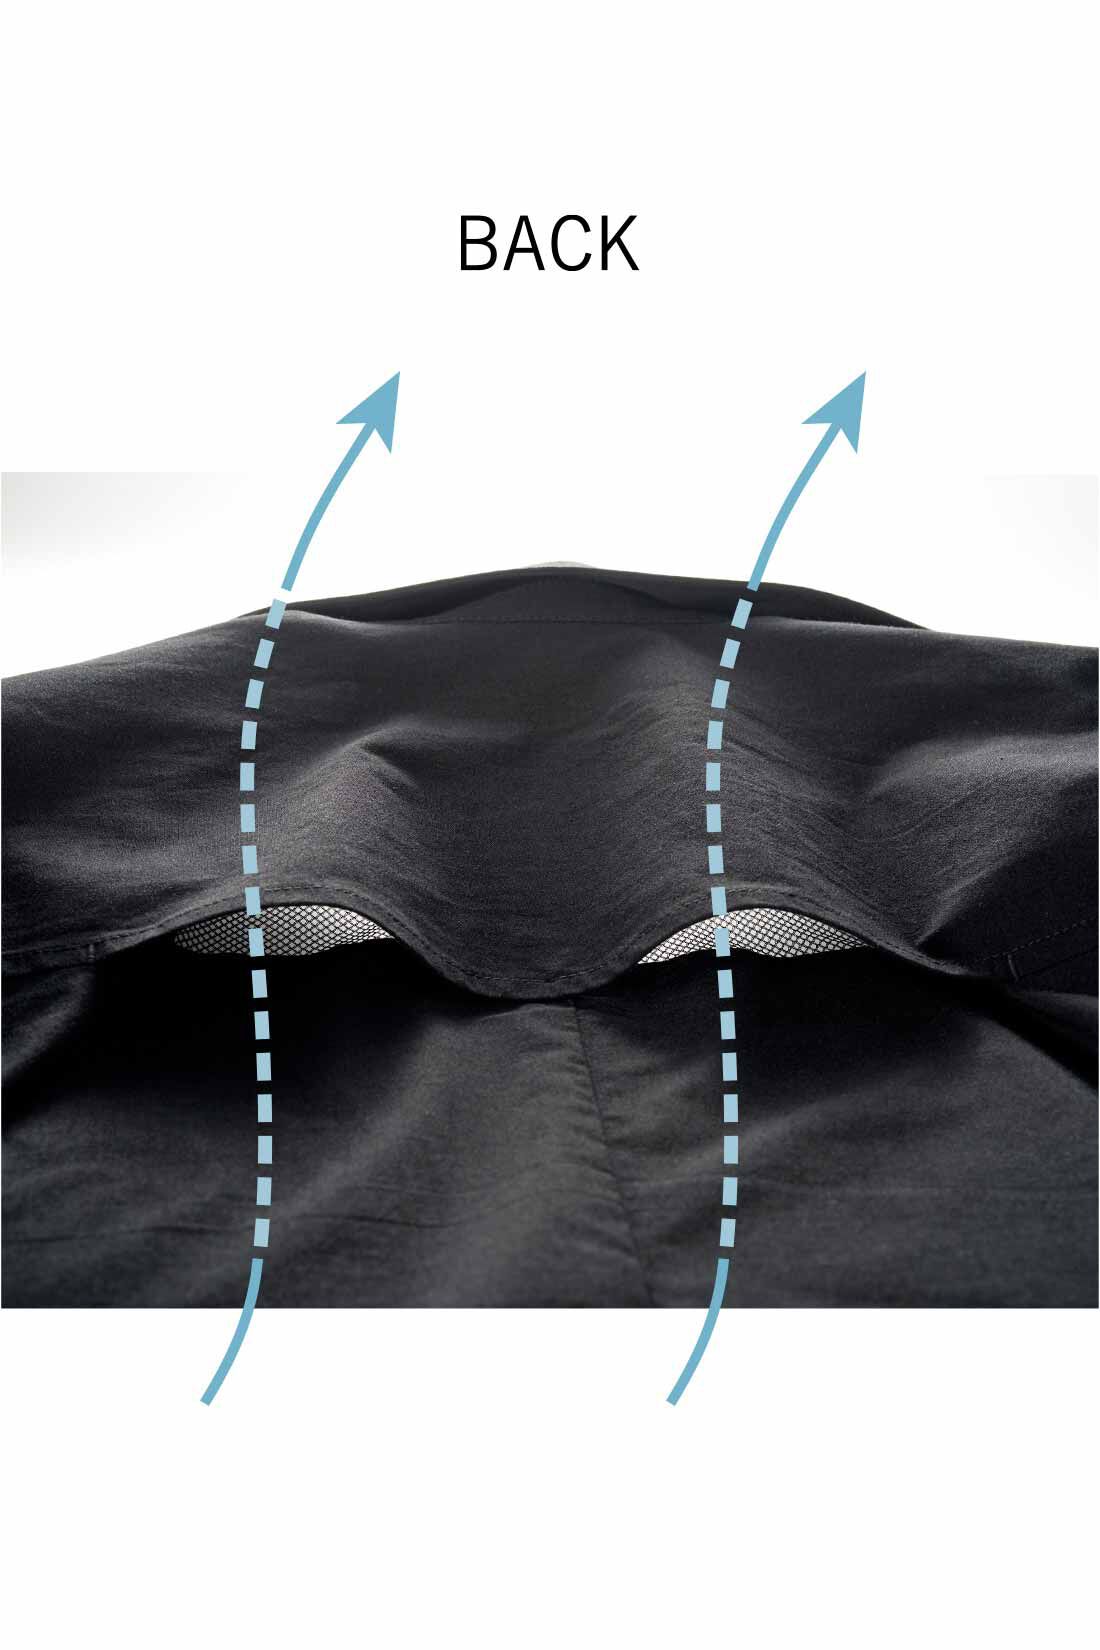 Real Stock|IEDIT[イディット] UVカット・吸汗速乾・接触冷感がうれしい エアノビライト涼やか メンズジャケット〈ブラック〉|背中の隠れメッシュ構造で、熱気を逃がして涼しさキープ。